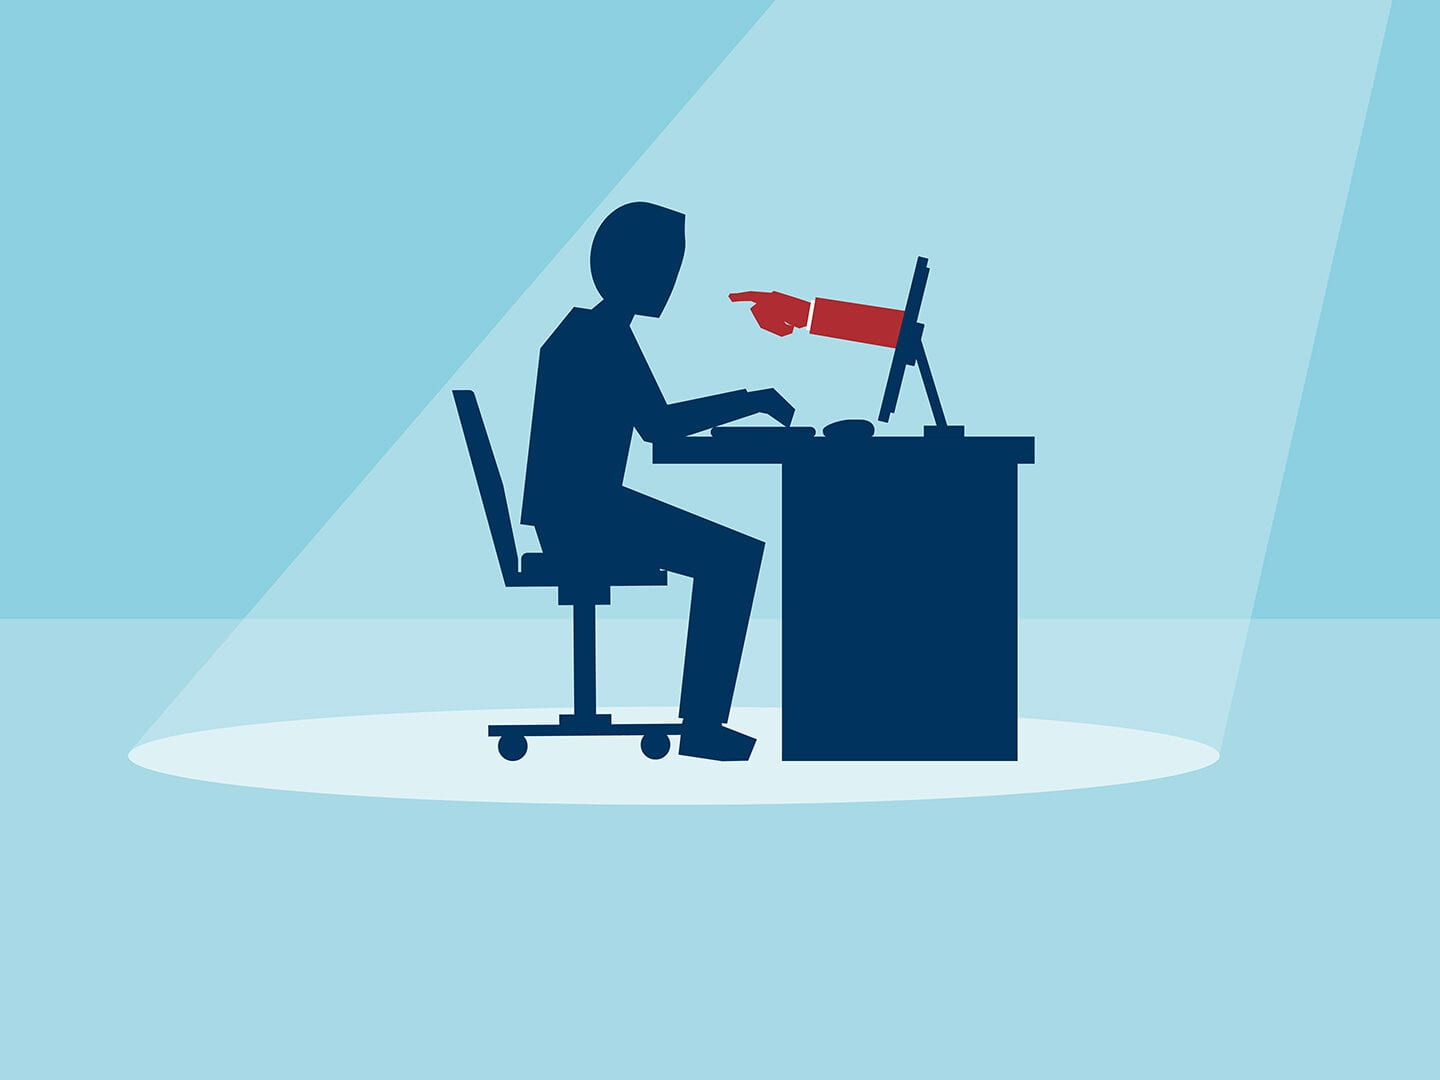 Mann sitzt im Schatten am Schreibtisch mit Computer. Aus dem Bildschirm kommt eine rote Hand, die auf den Nutzer zeigt. Illustration in hell- und dunkelblau.